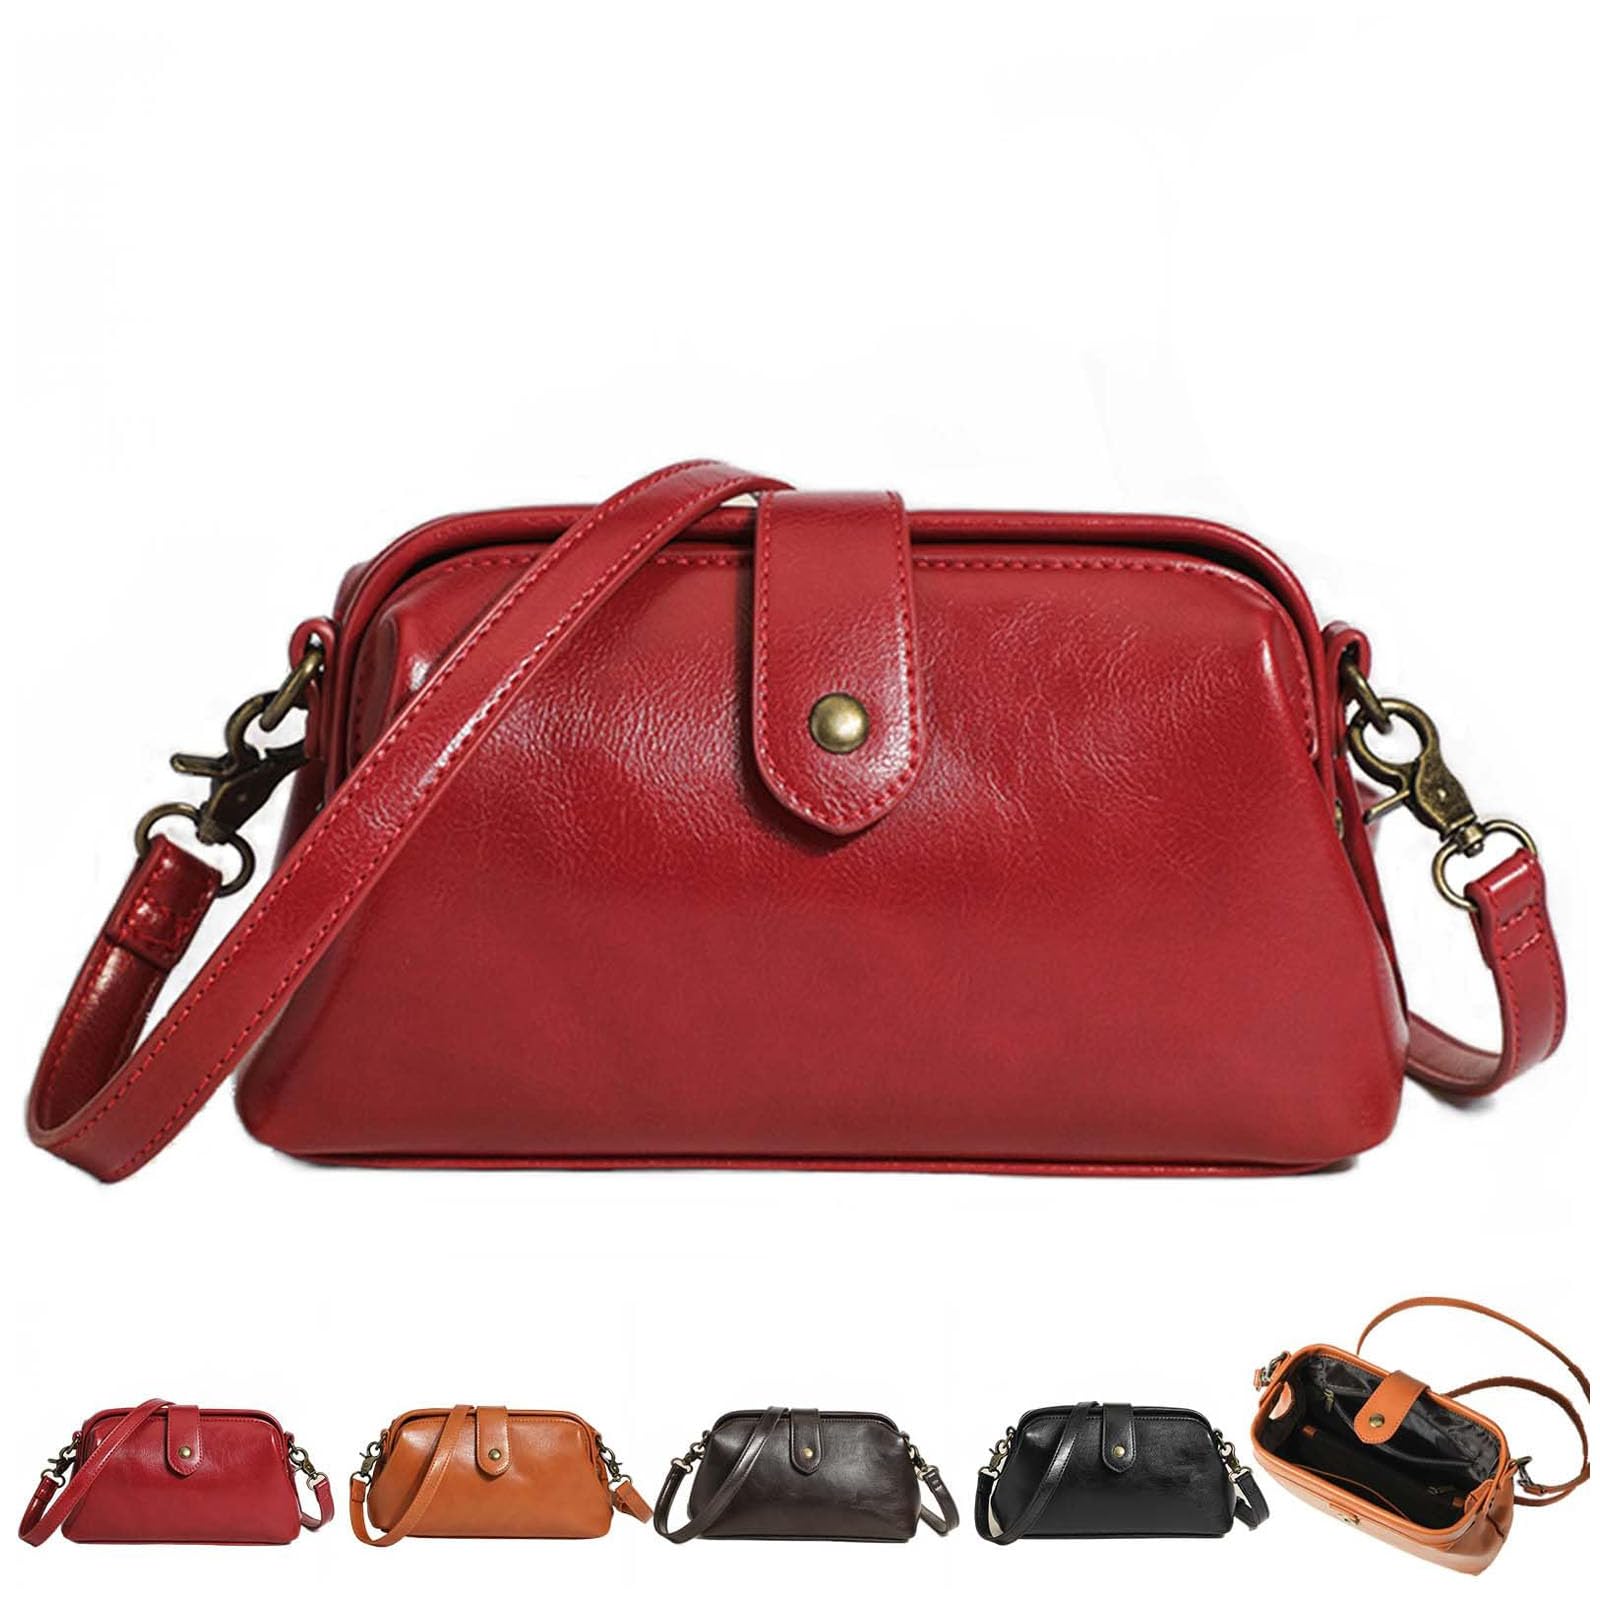 Langrents Retro Handtasche, Langrents Handtasche, Langrents Retro Handgemachte Tasche, Langrents Kleine Handtasche, Italienische Lederhandtaschen (A)